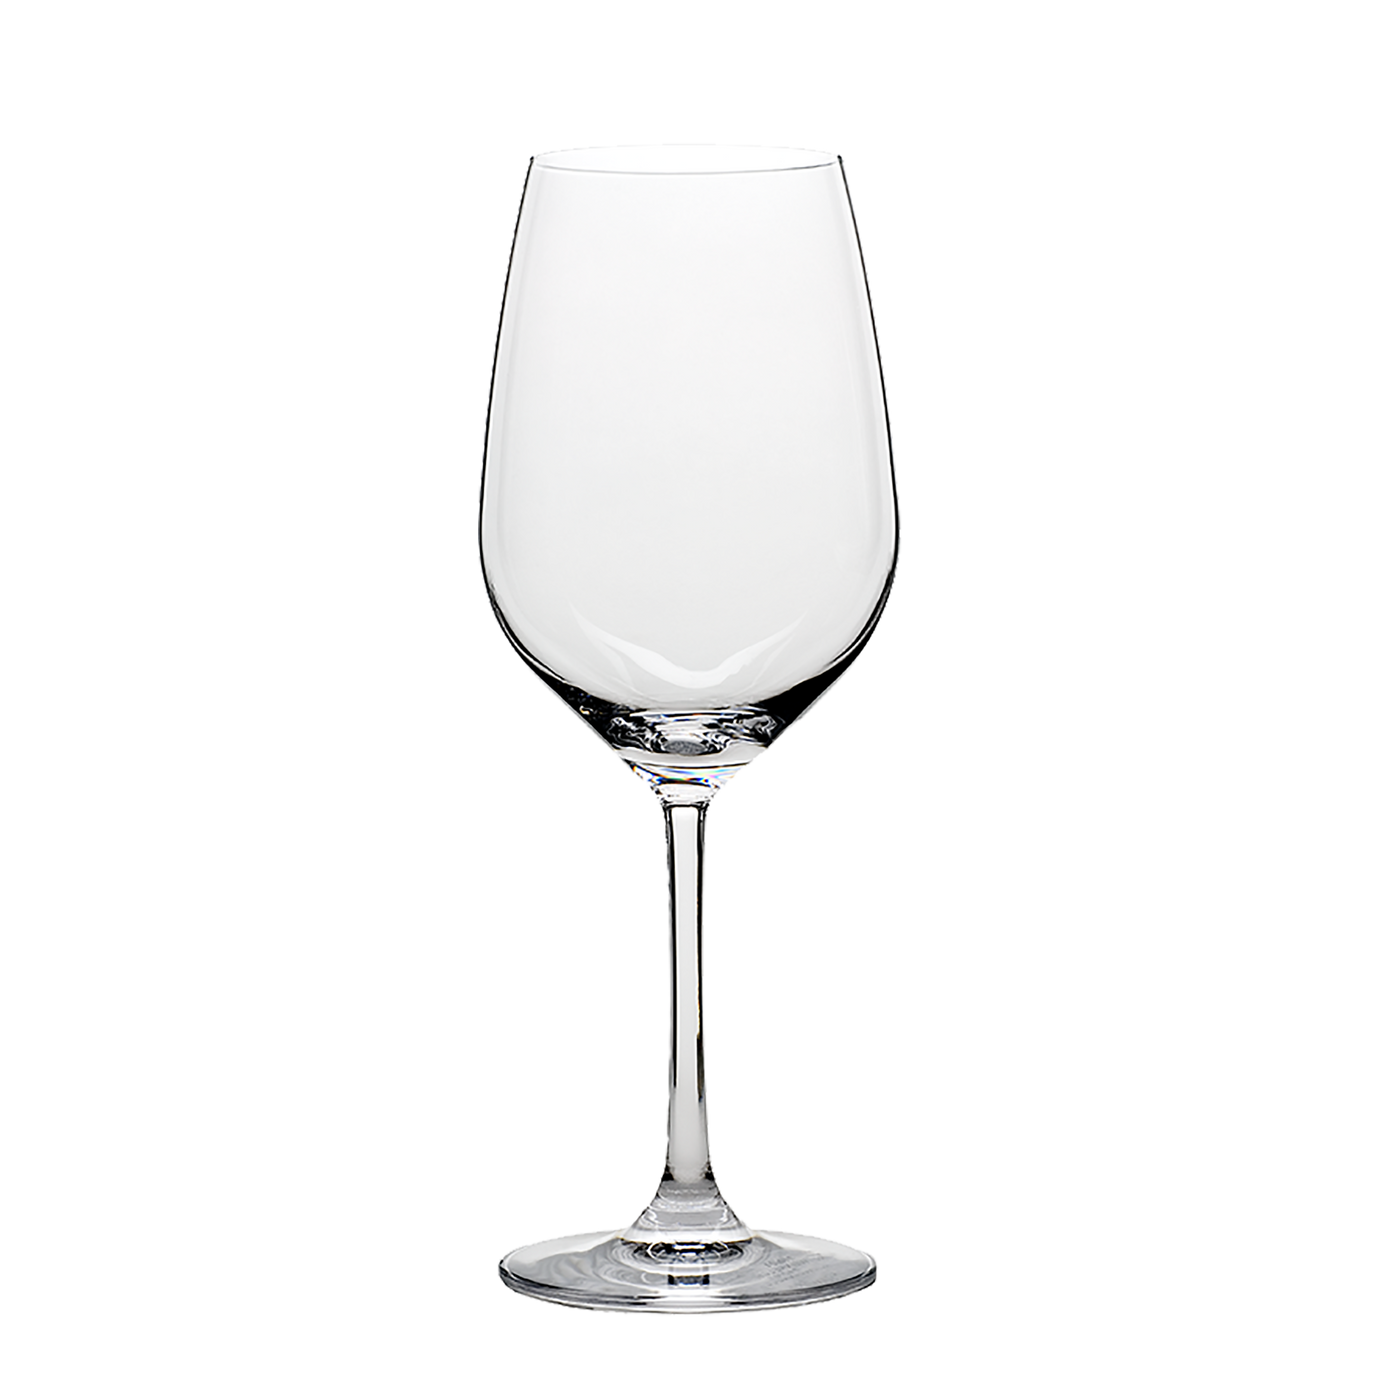 Grand Epicurean All Purpose Wine Glass 16 ¾ oz - Set of four.